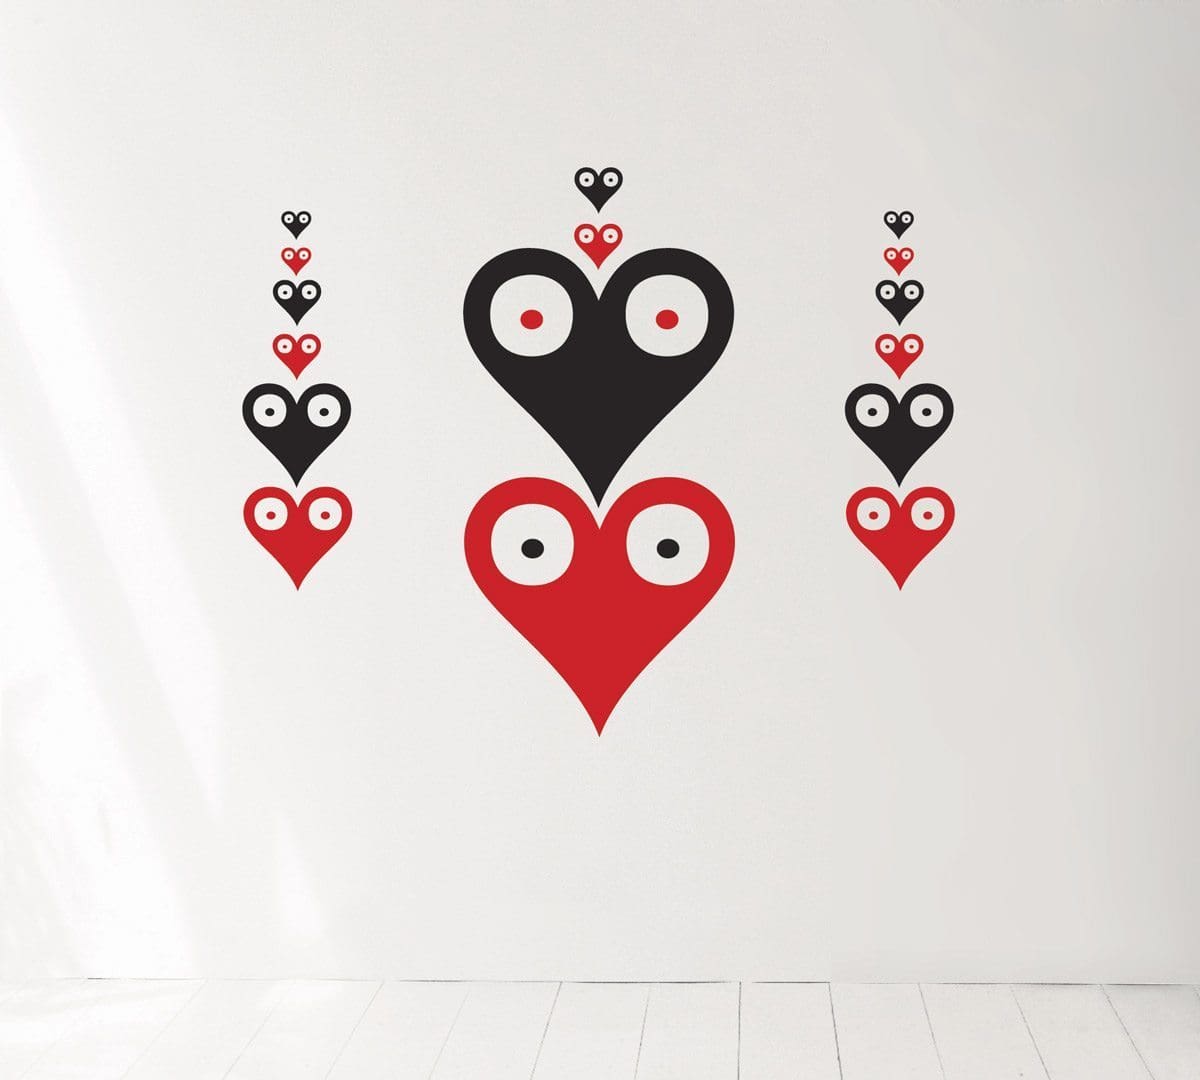 Wallsticker Rami, le motif Pokerface sur votre mur, design IchetKar, édition Domestic